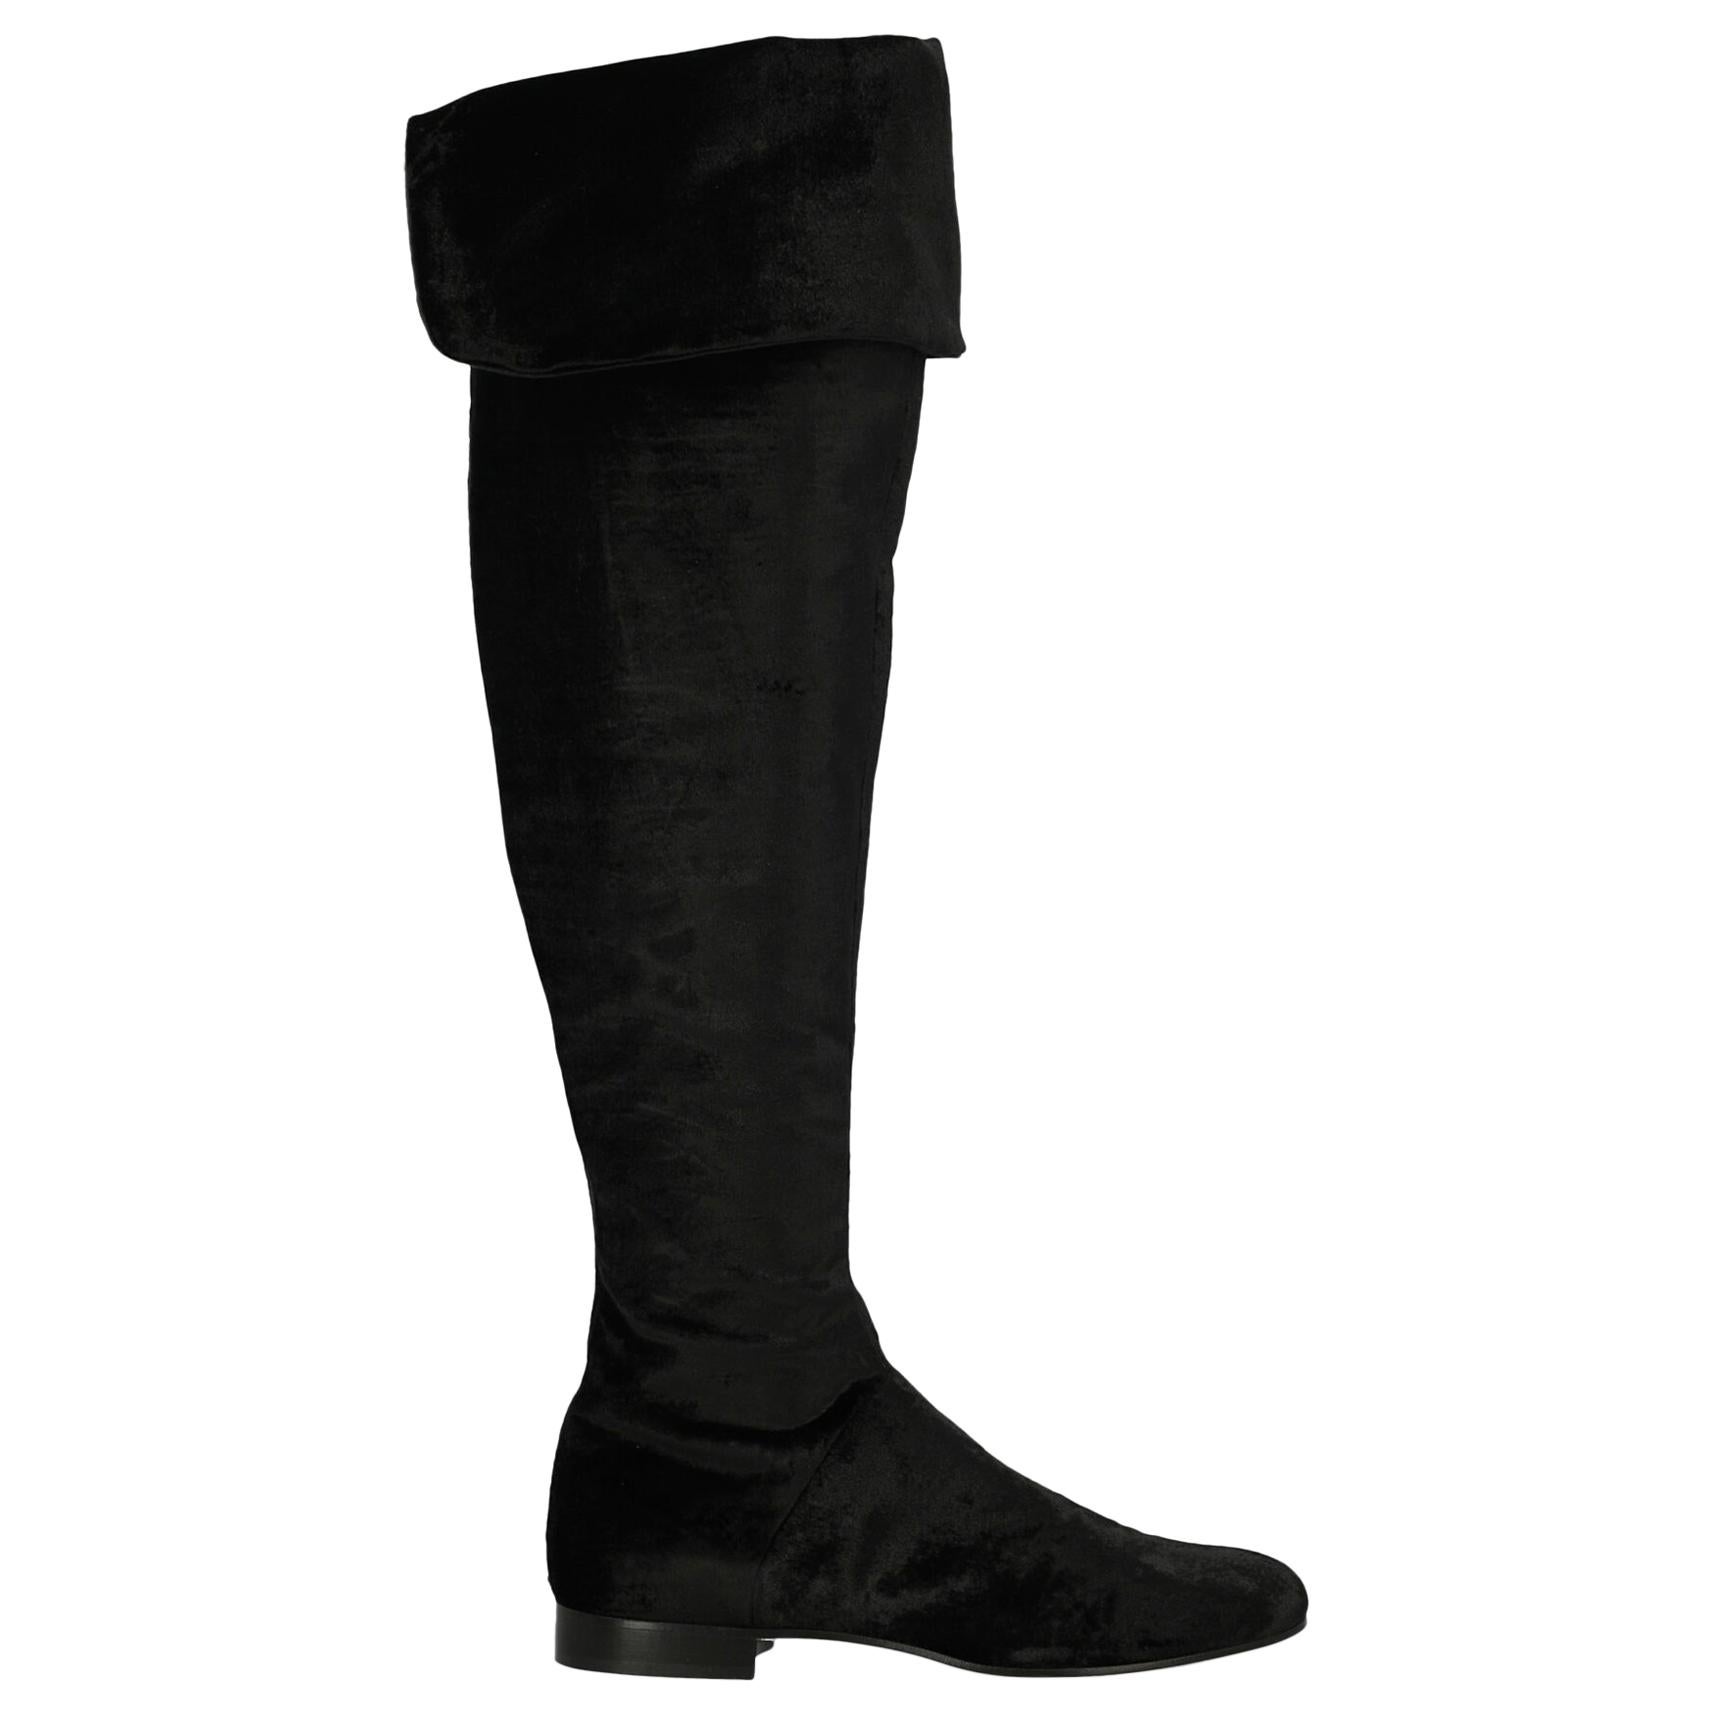 Alberta Ferretti Woman Boots Black Fabric IT 39 For Sale